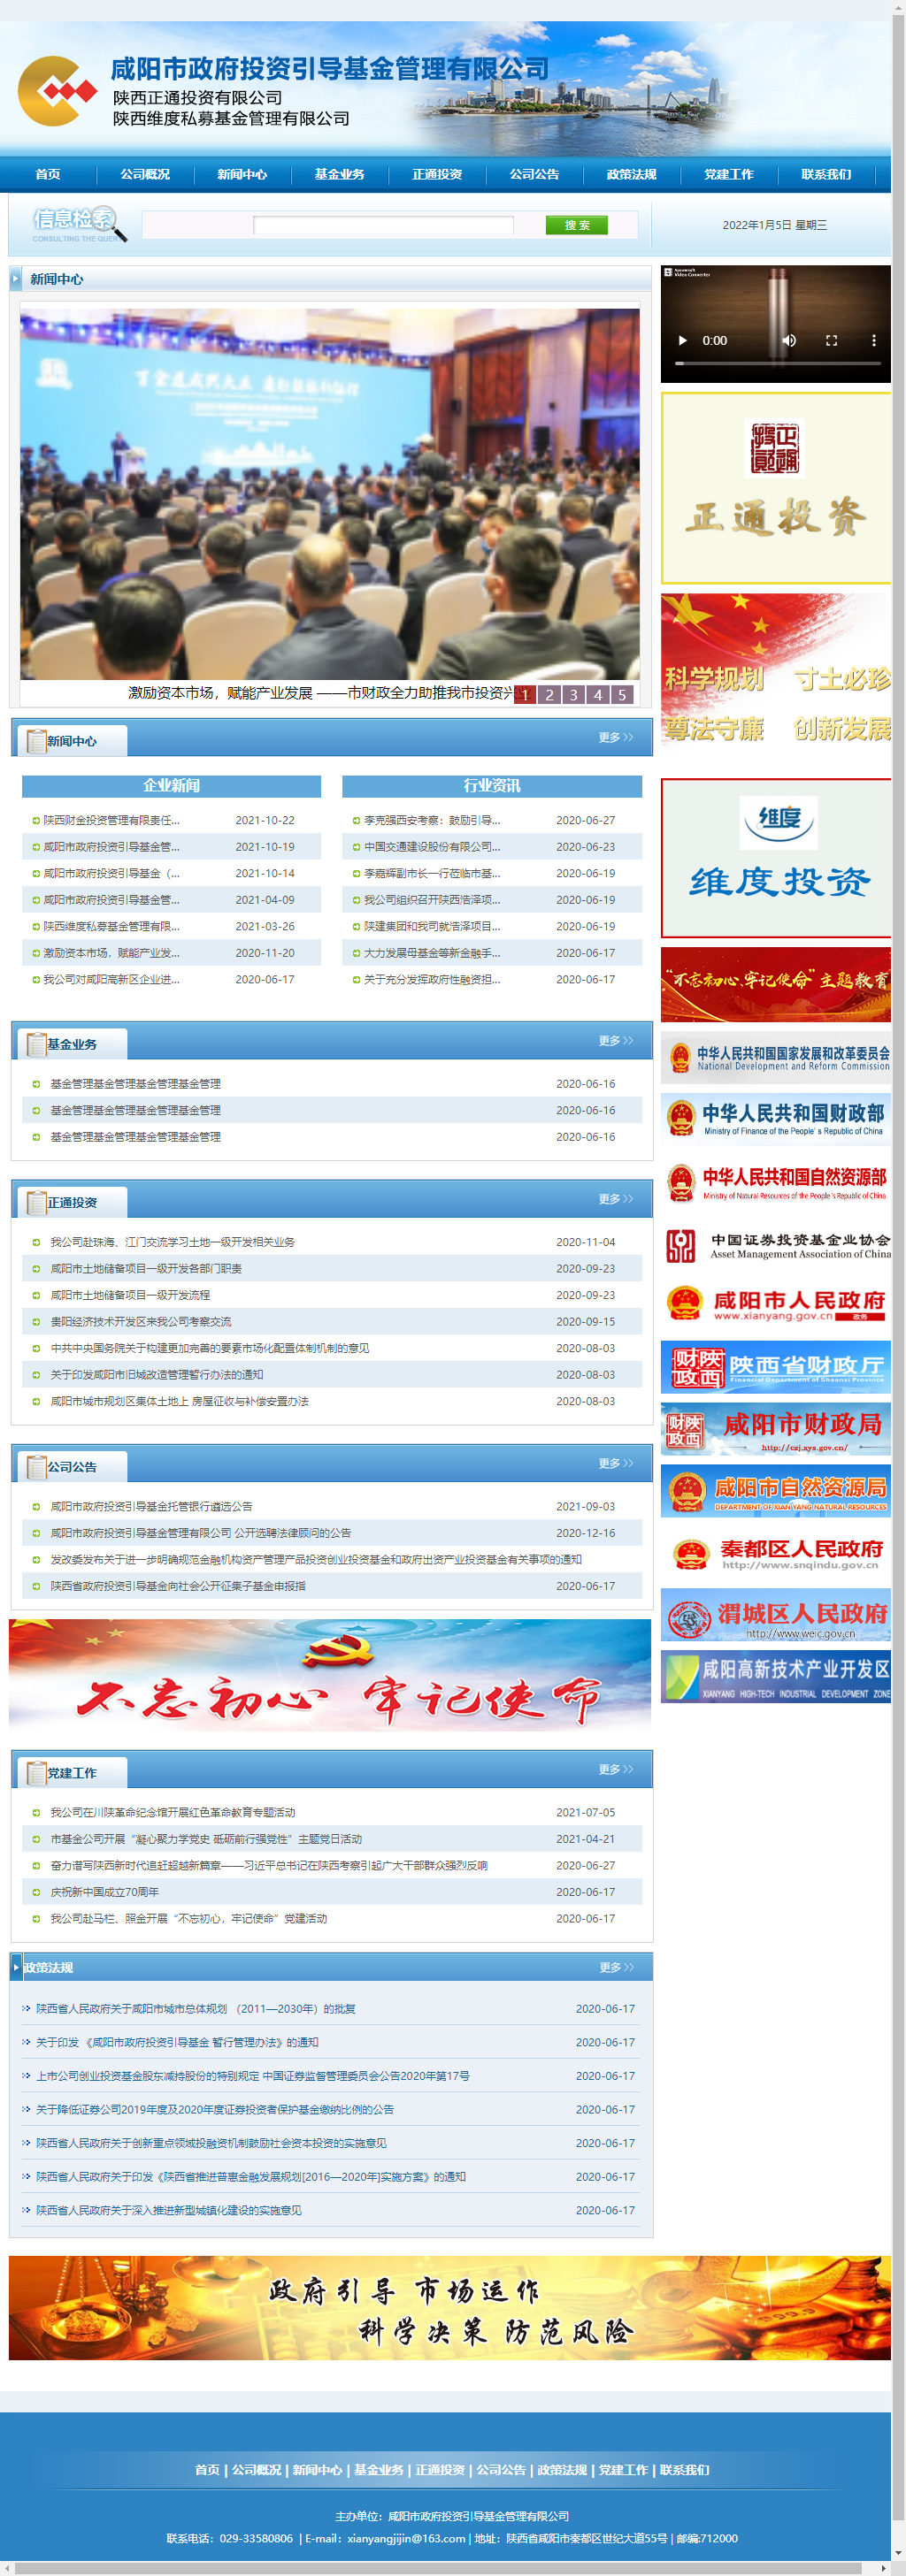 咸阳市政府投资引导基金管理有限公司网站案例